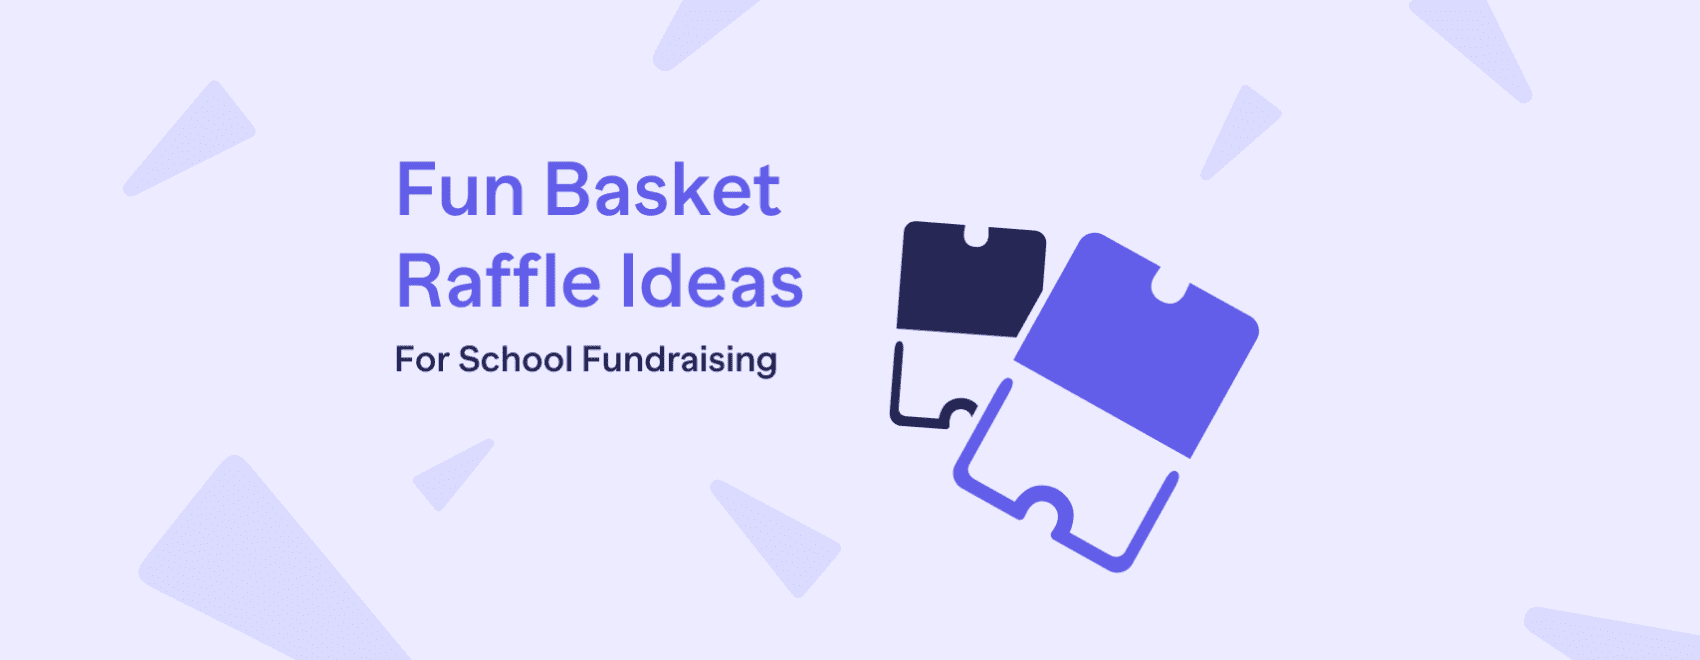 Fun Basket Raffle Ideas for School Fundraising